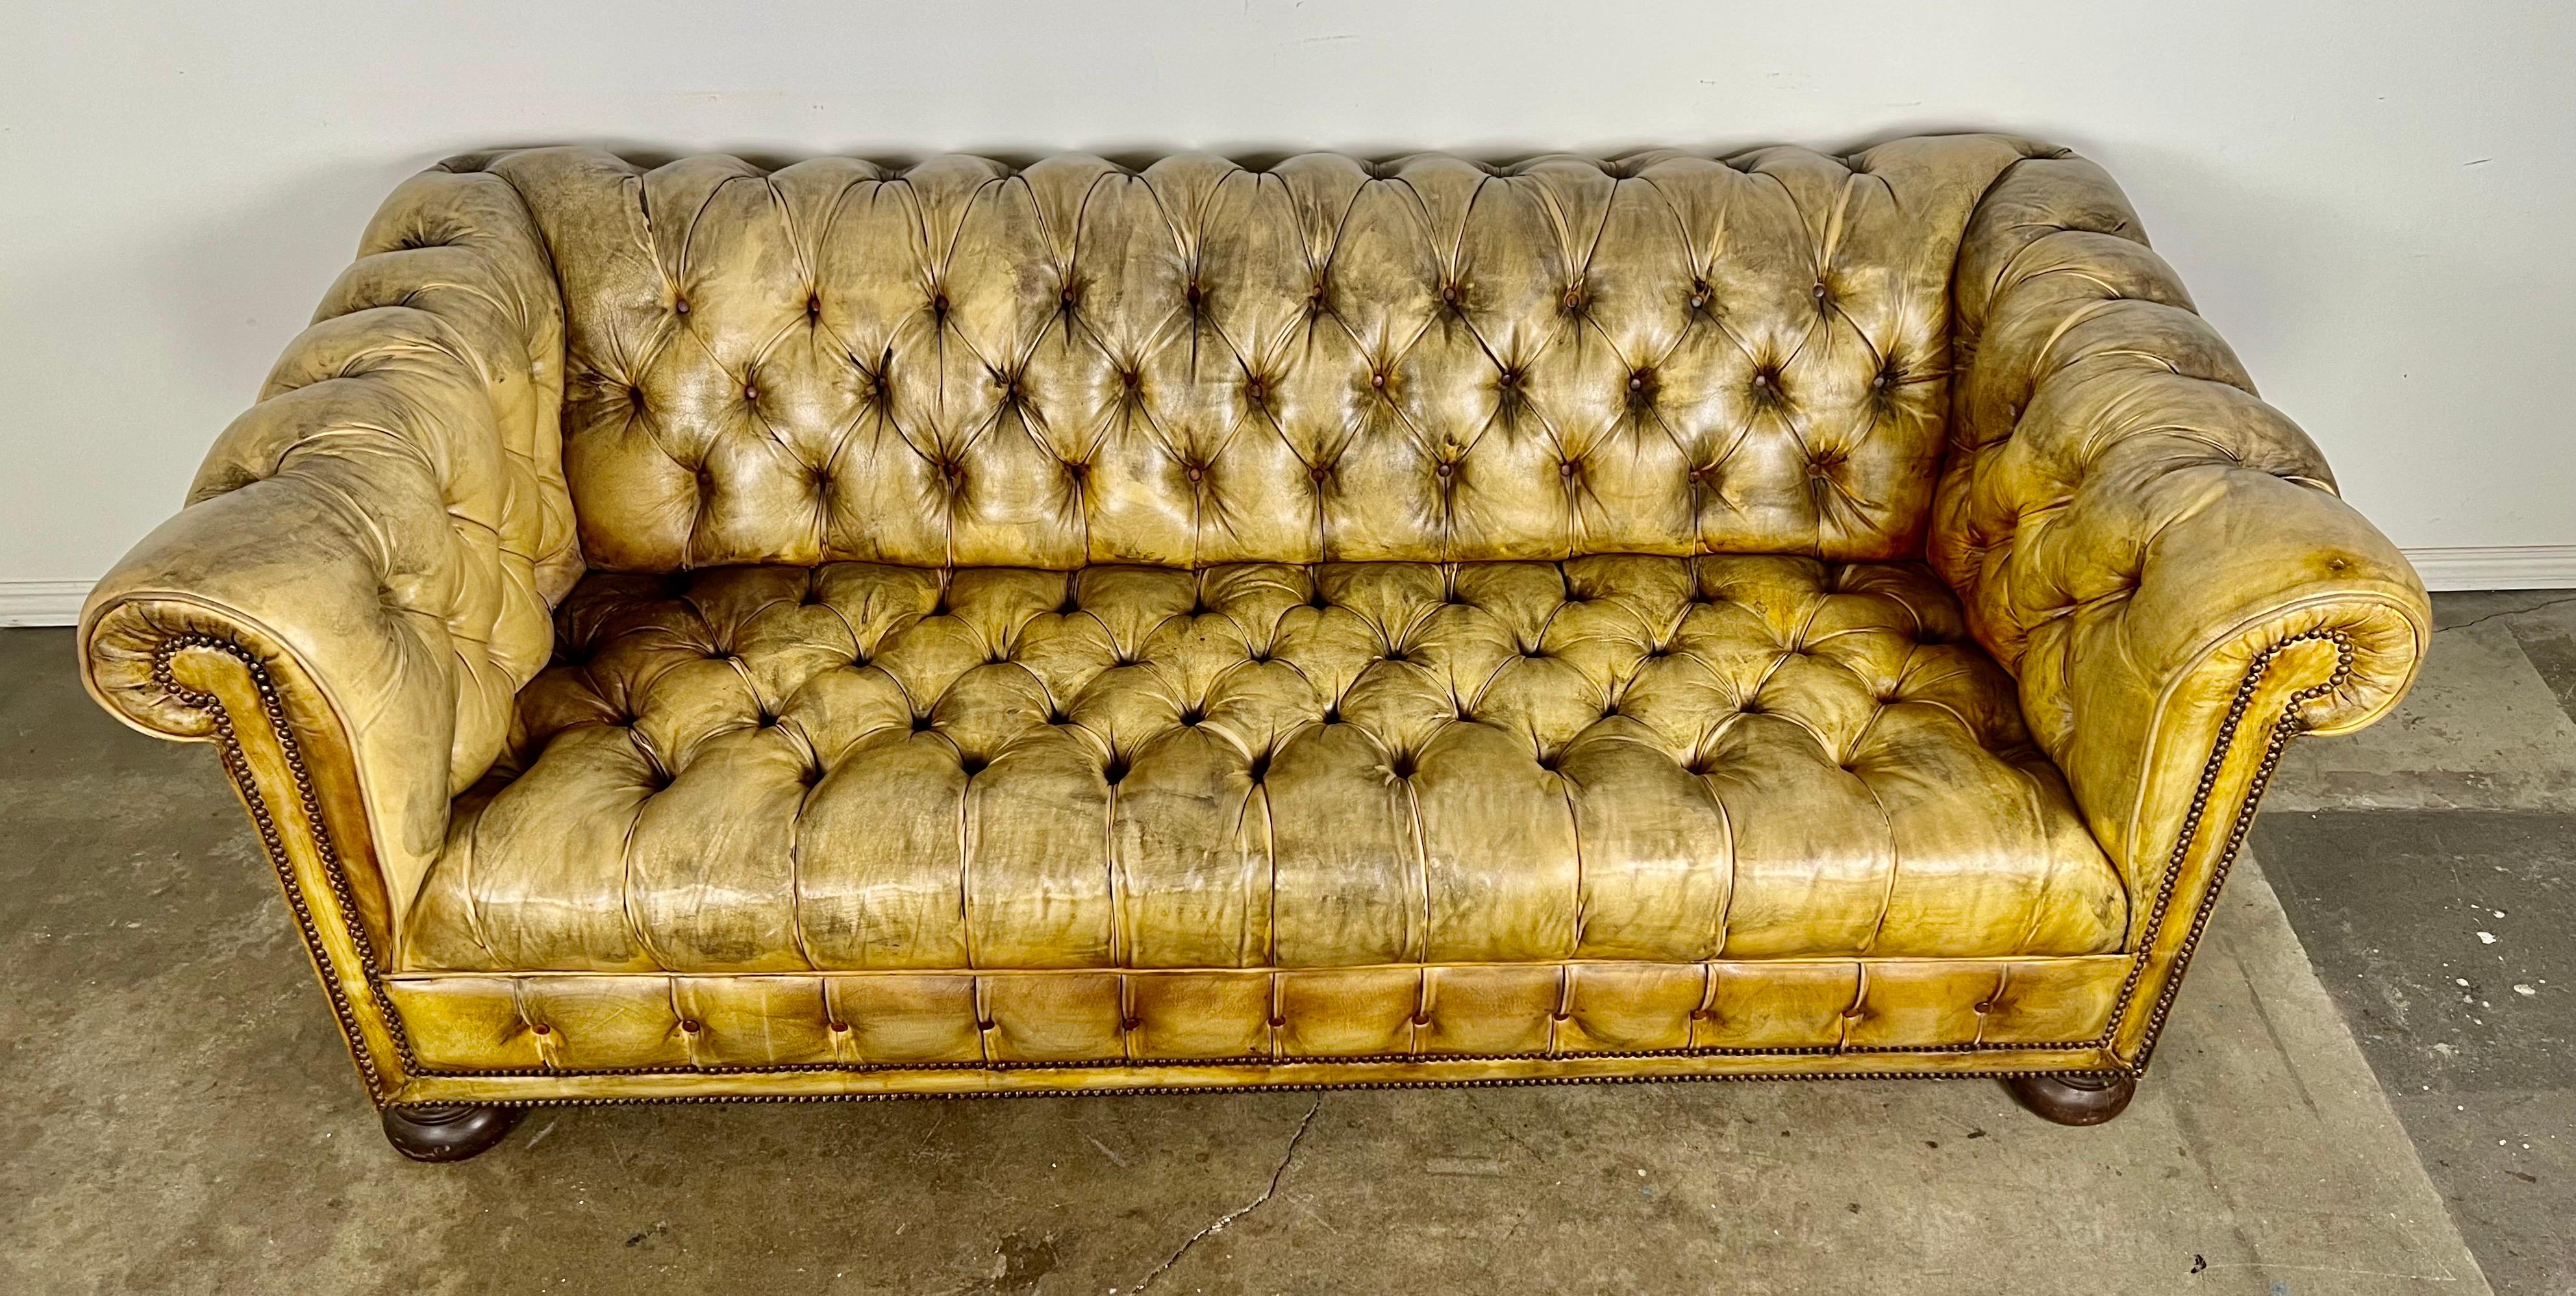 Vintage English Chesterfield Stil Leder getuftet Sofa mit bunten Füßen.  Das Chesterfield-Sofa verfügt über eine durchgehende Nagelkopfverzierung.  Dieses Sofa hat durch den jahrelangen Gebrauch eine schöne Patina entwickelt.